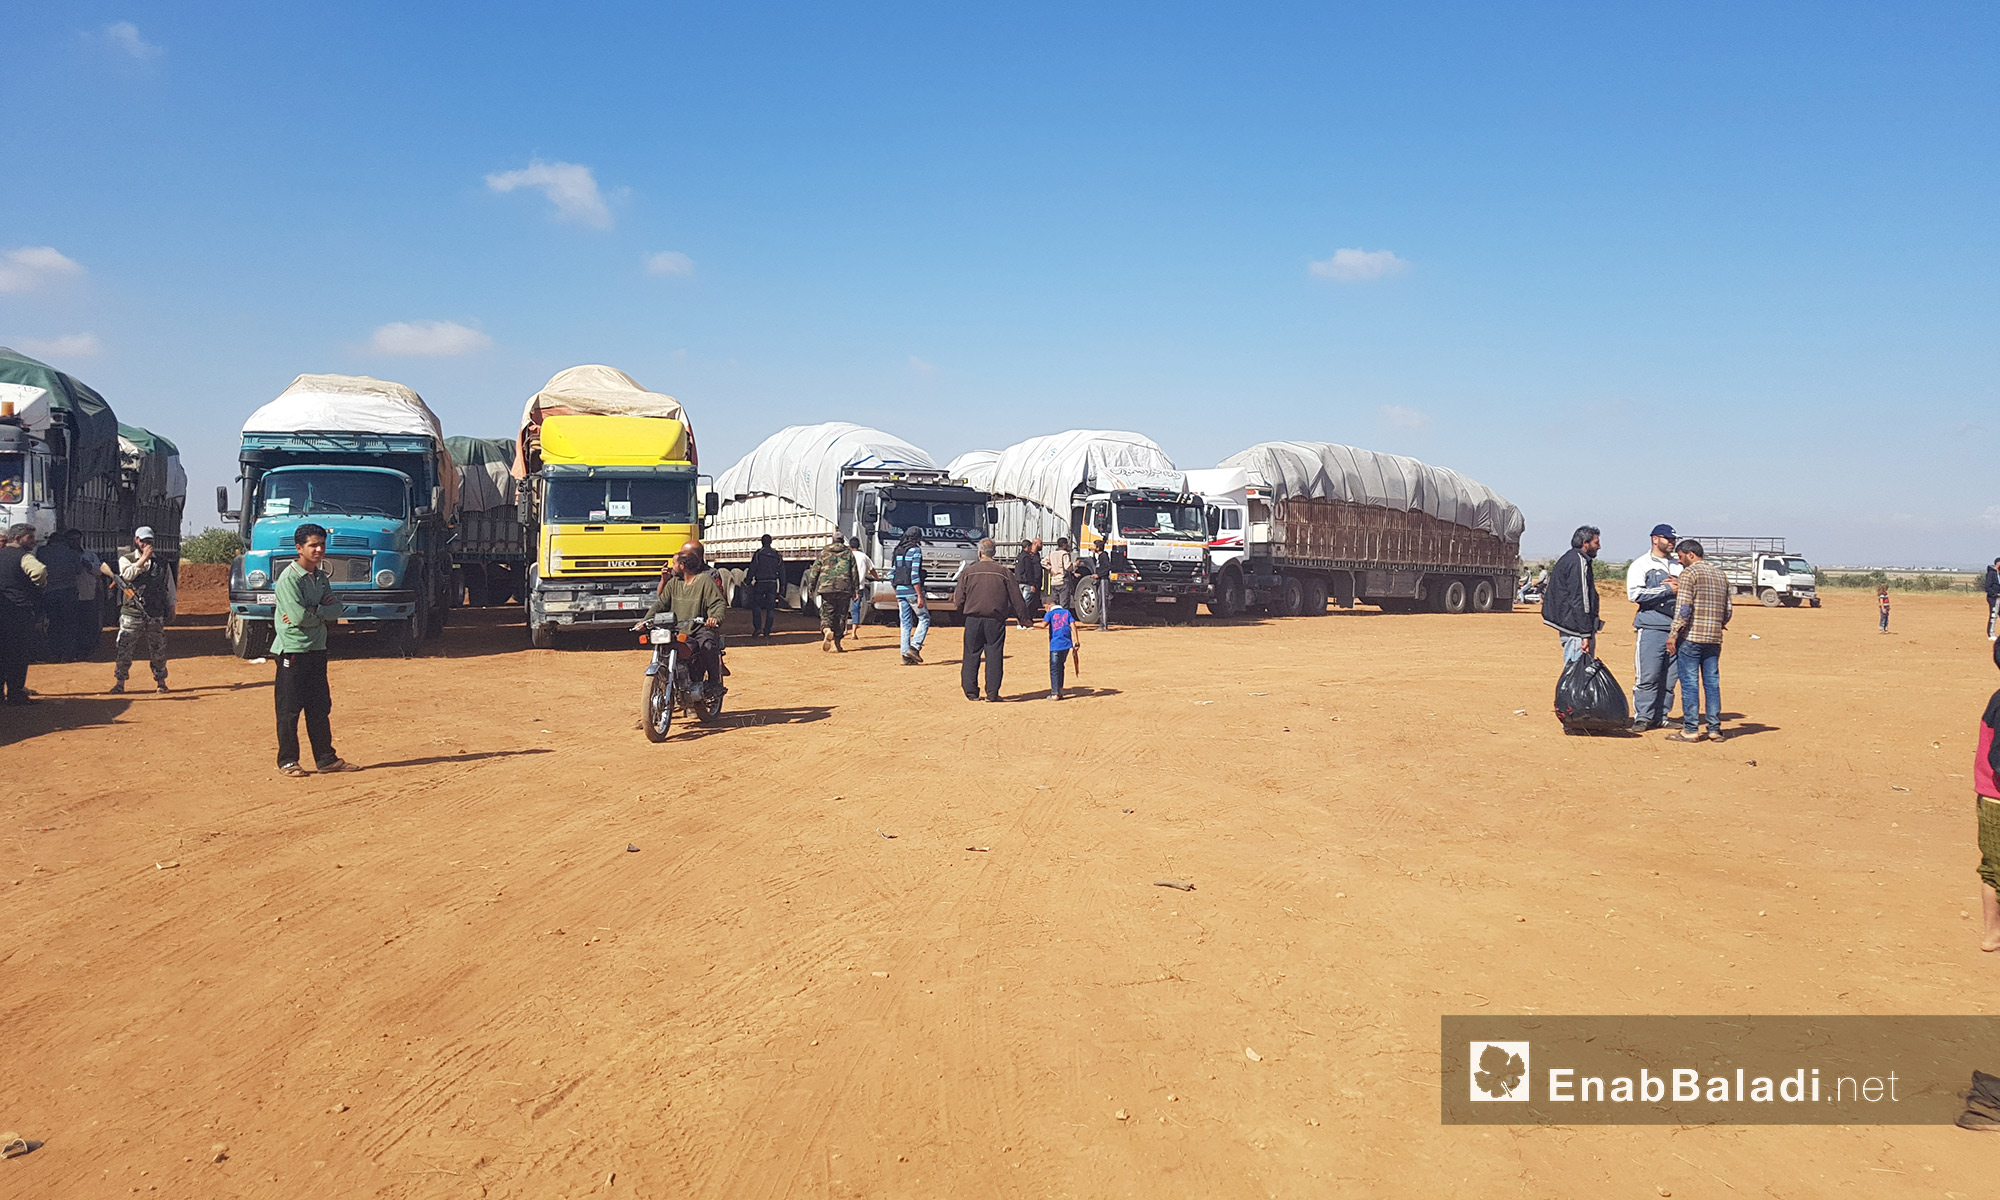 شاحنات الأمتعة الخاصة بأهالي حي الوعر داخل مخيم "زوغرة" في ريف جرابلس بحلب - 22 أيار 2017 (عنب بلدي)